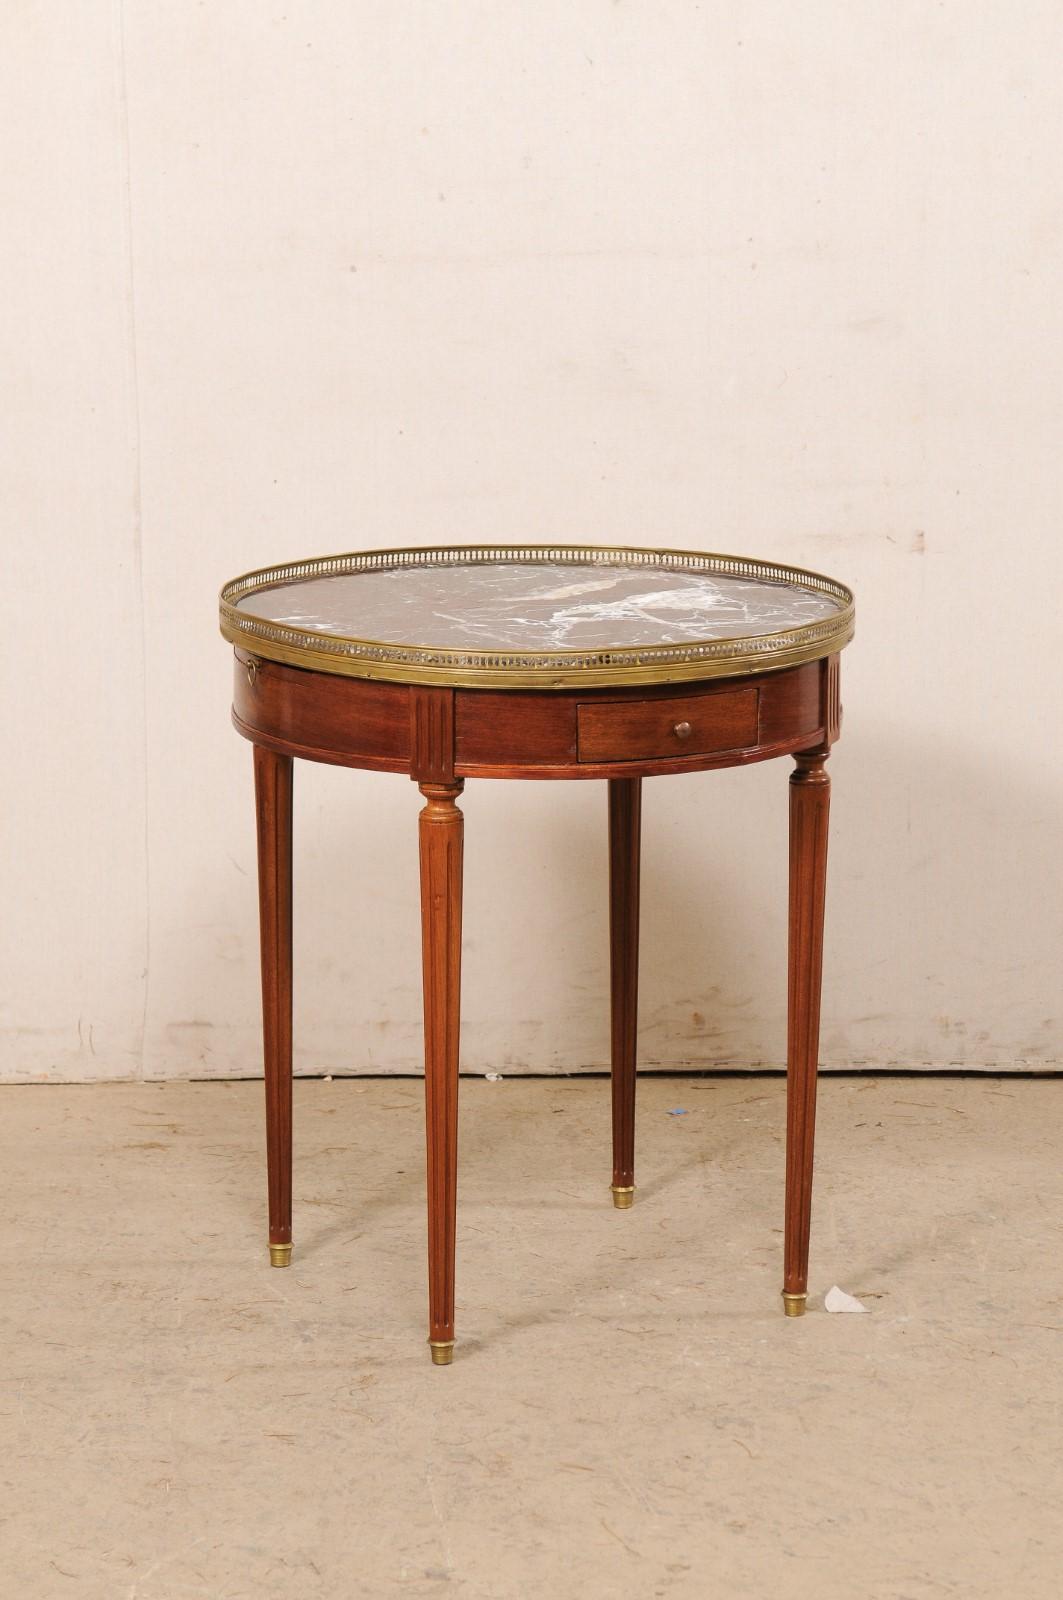 Französischer Beistelltisch aus Kirschholz mit Messing- und Marmorplatte aus dem frühen 20. Jahrhundert. Dieser antike Tisch aus Frankreich hat eine runde, abgeschrägte Steinplatte (in dunklen Wein-, Weiß-, Schwarz- und hellen Brauntönen), die von